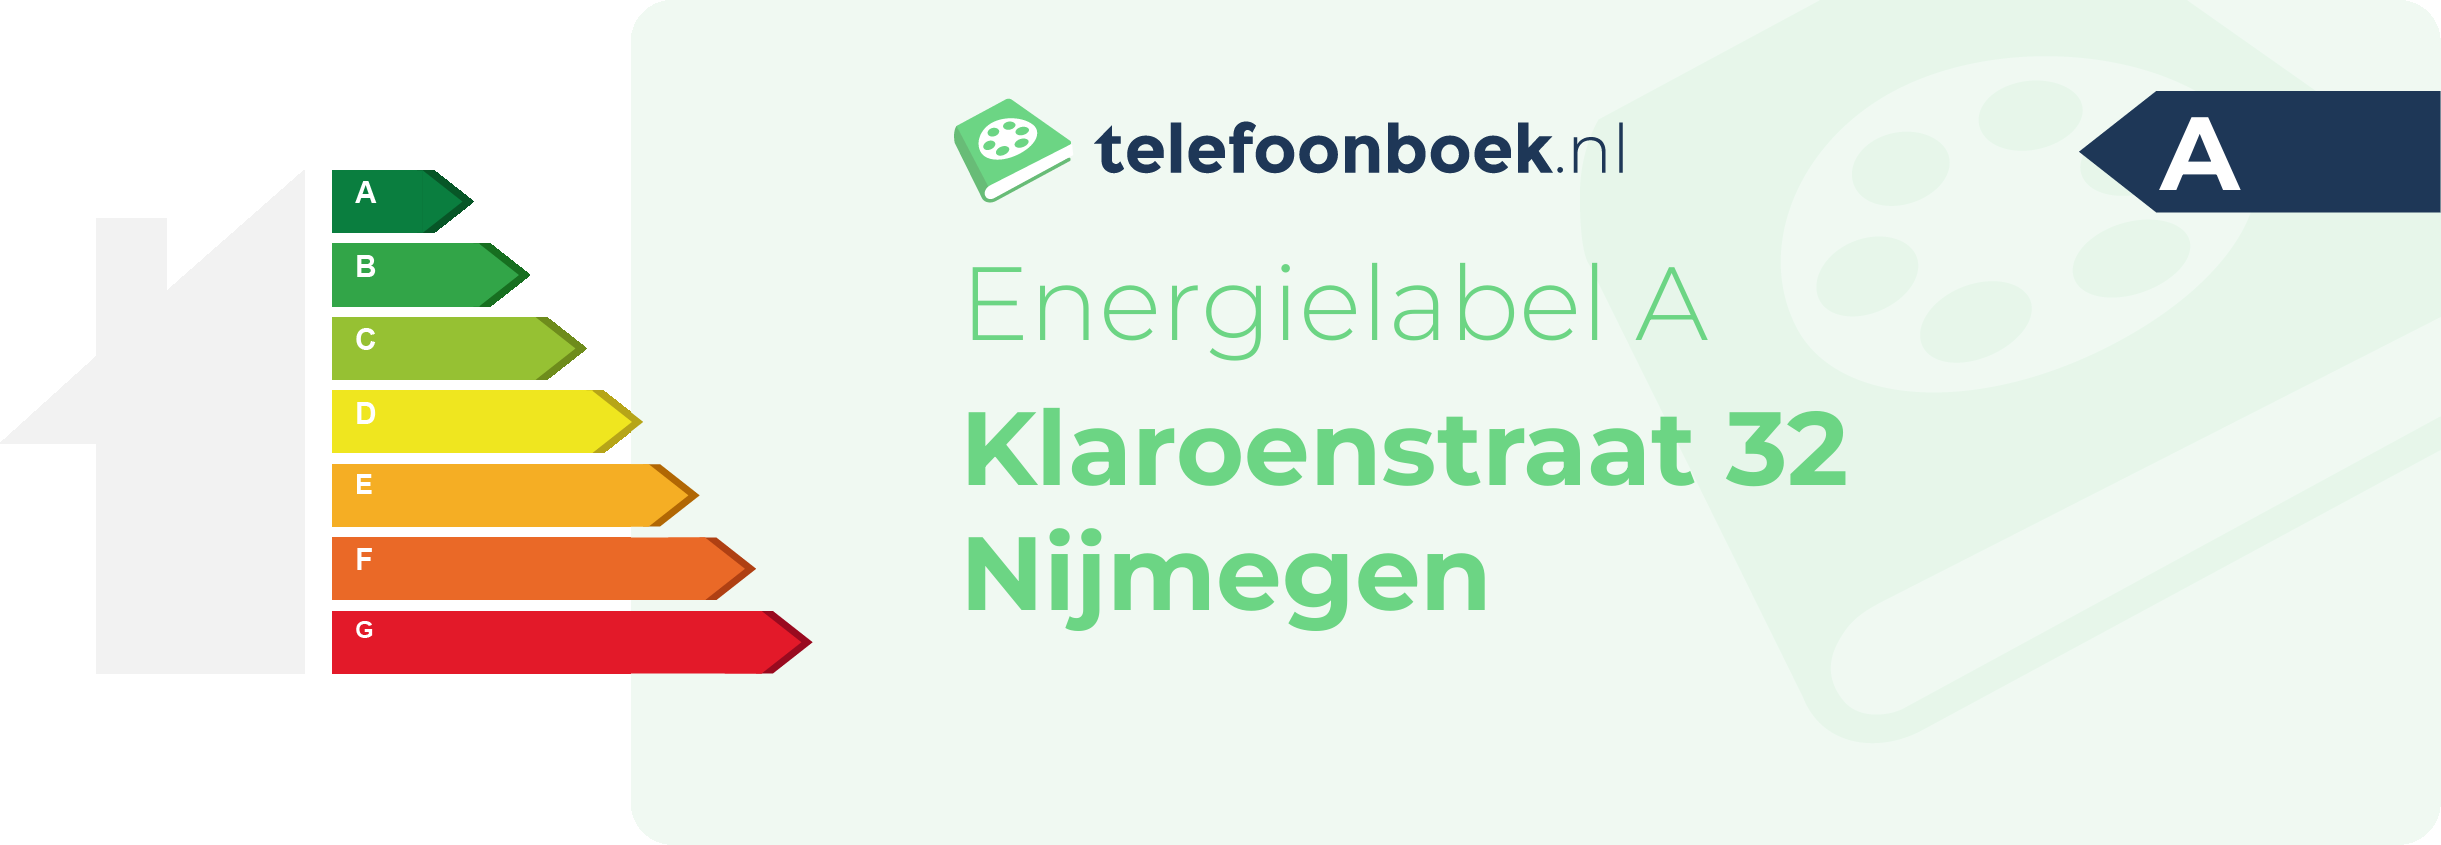 Energielabel Klaroenstraat 32 Nijmegen